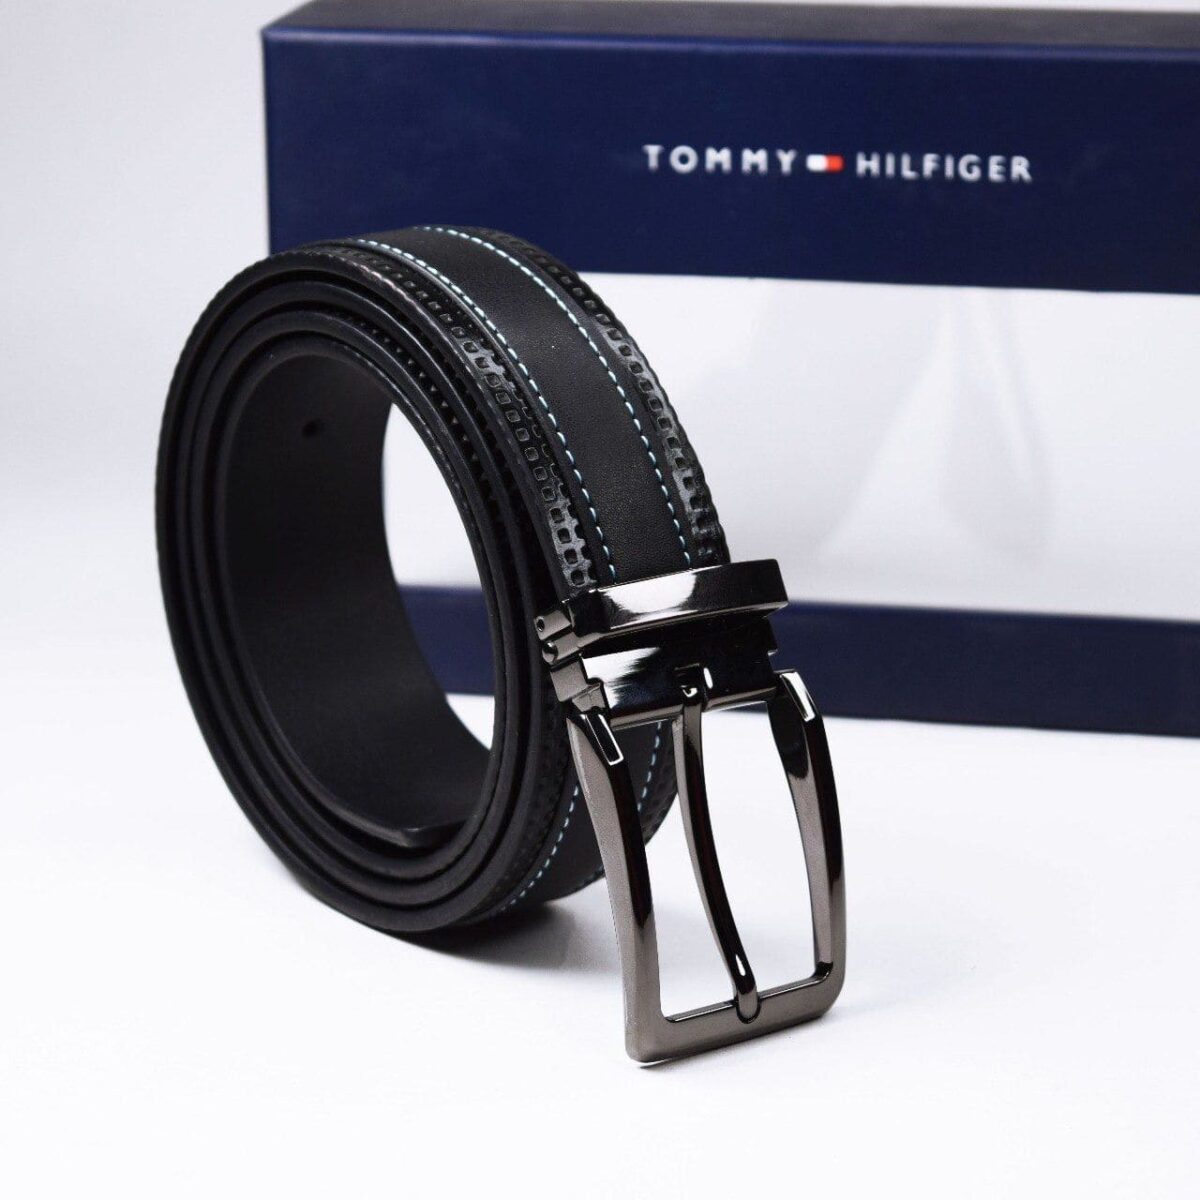 original-belt-tommy-hilfiger-in-egypt-for-men-black-leather-color